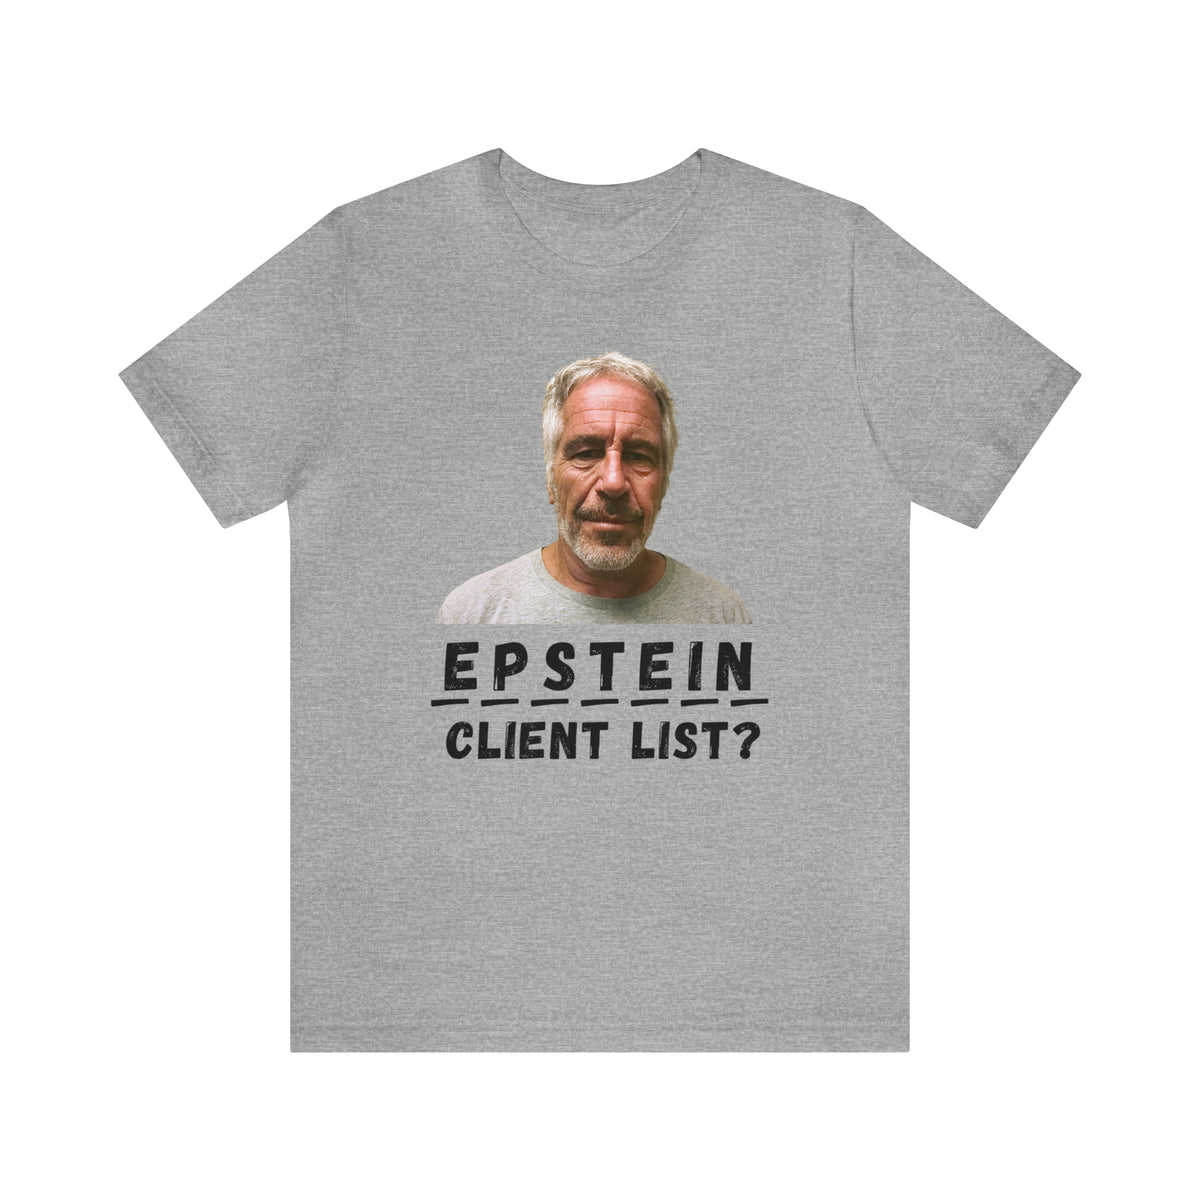 Epstein Client List? Hangman T-Shirt